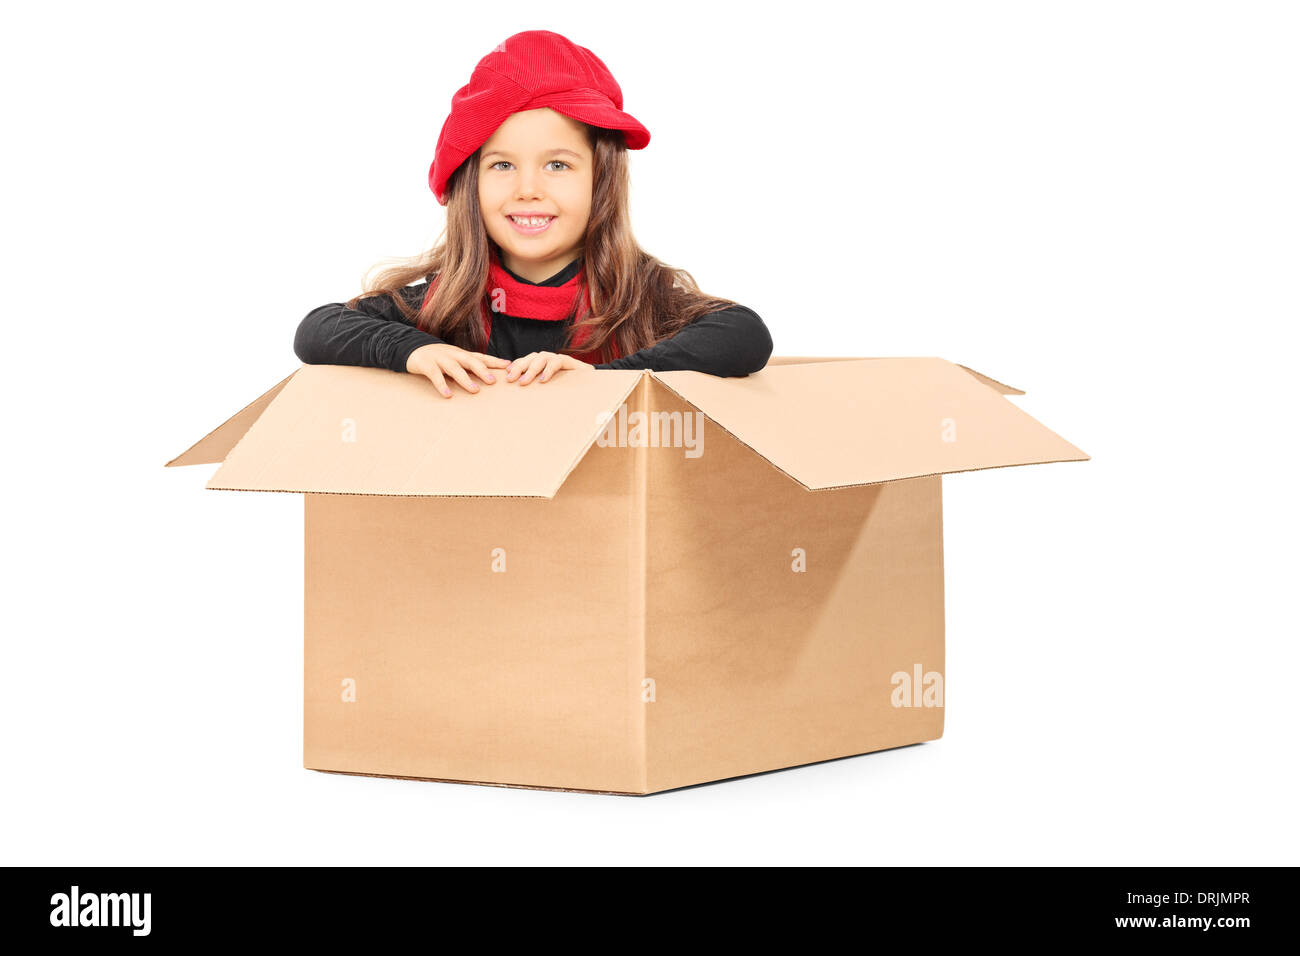 Petite fille espiègle dans un emballage en carton Banque D'Images